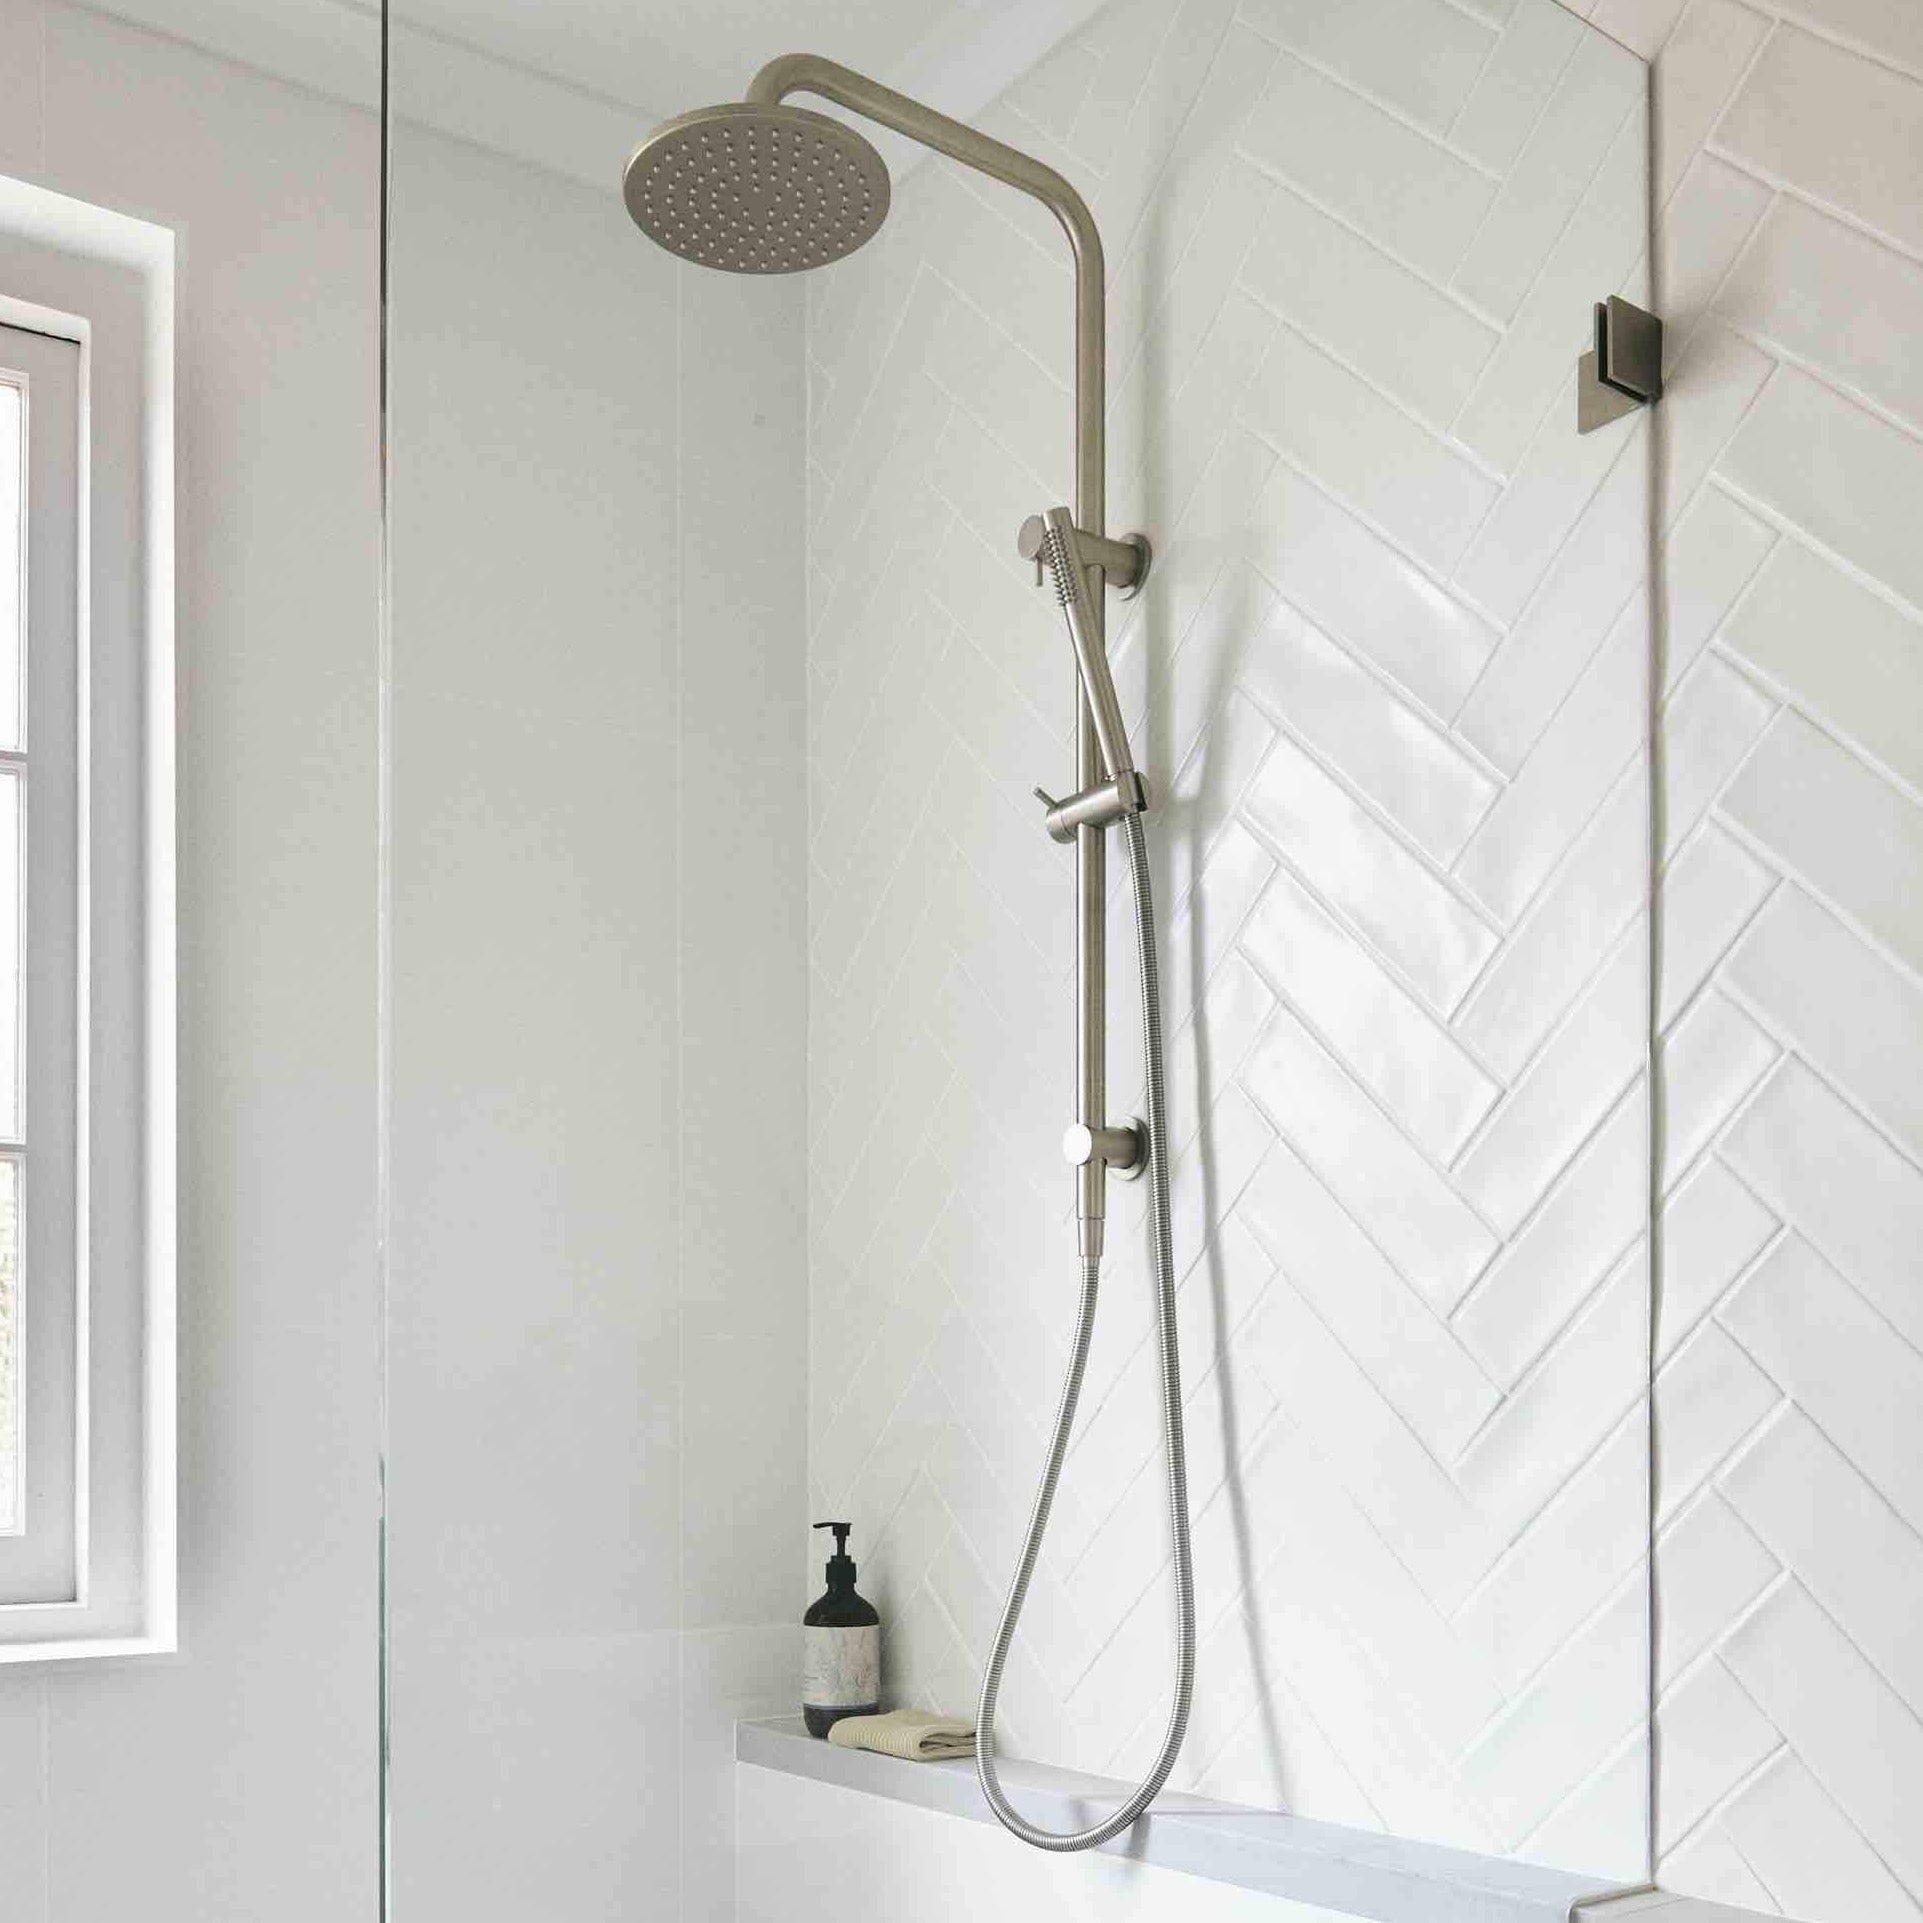 Daintree Shower Set in Brushed Nickel Ex-Display